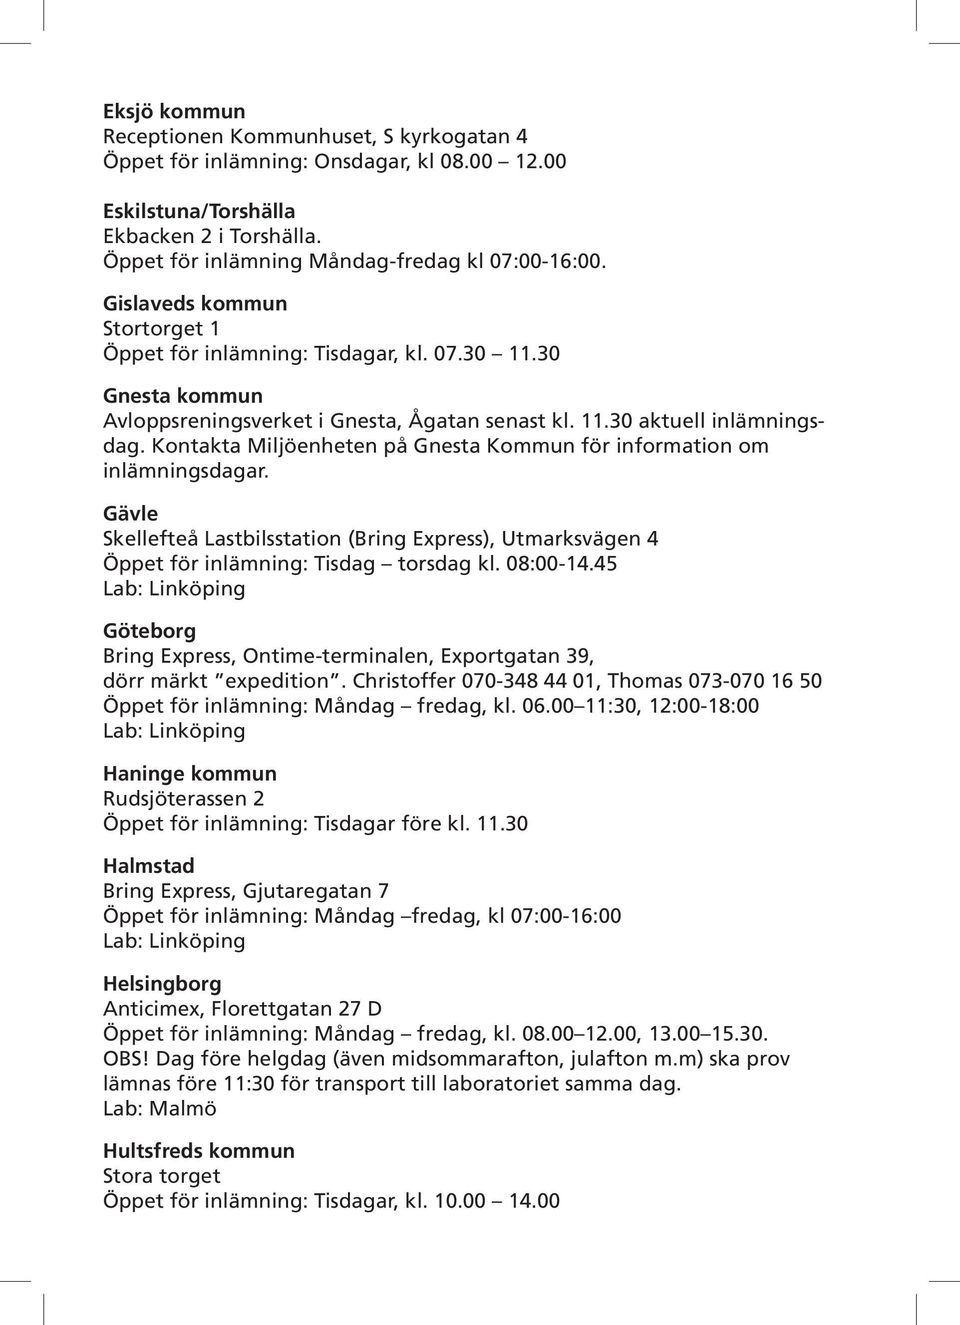 Kontakta Miljöenheten på Gnesta Kommun för information om inlämningsdagar. Gävle Skellefteå Lastbilsstation (Bring Express), Utmarksvägen 4 Öppet för inlämning: Tisdag torsdag kl. 08:00-14.